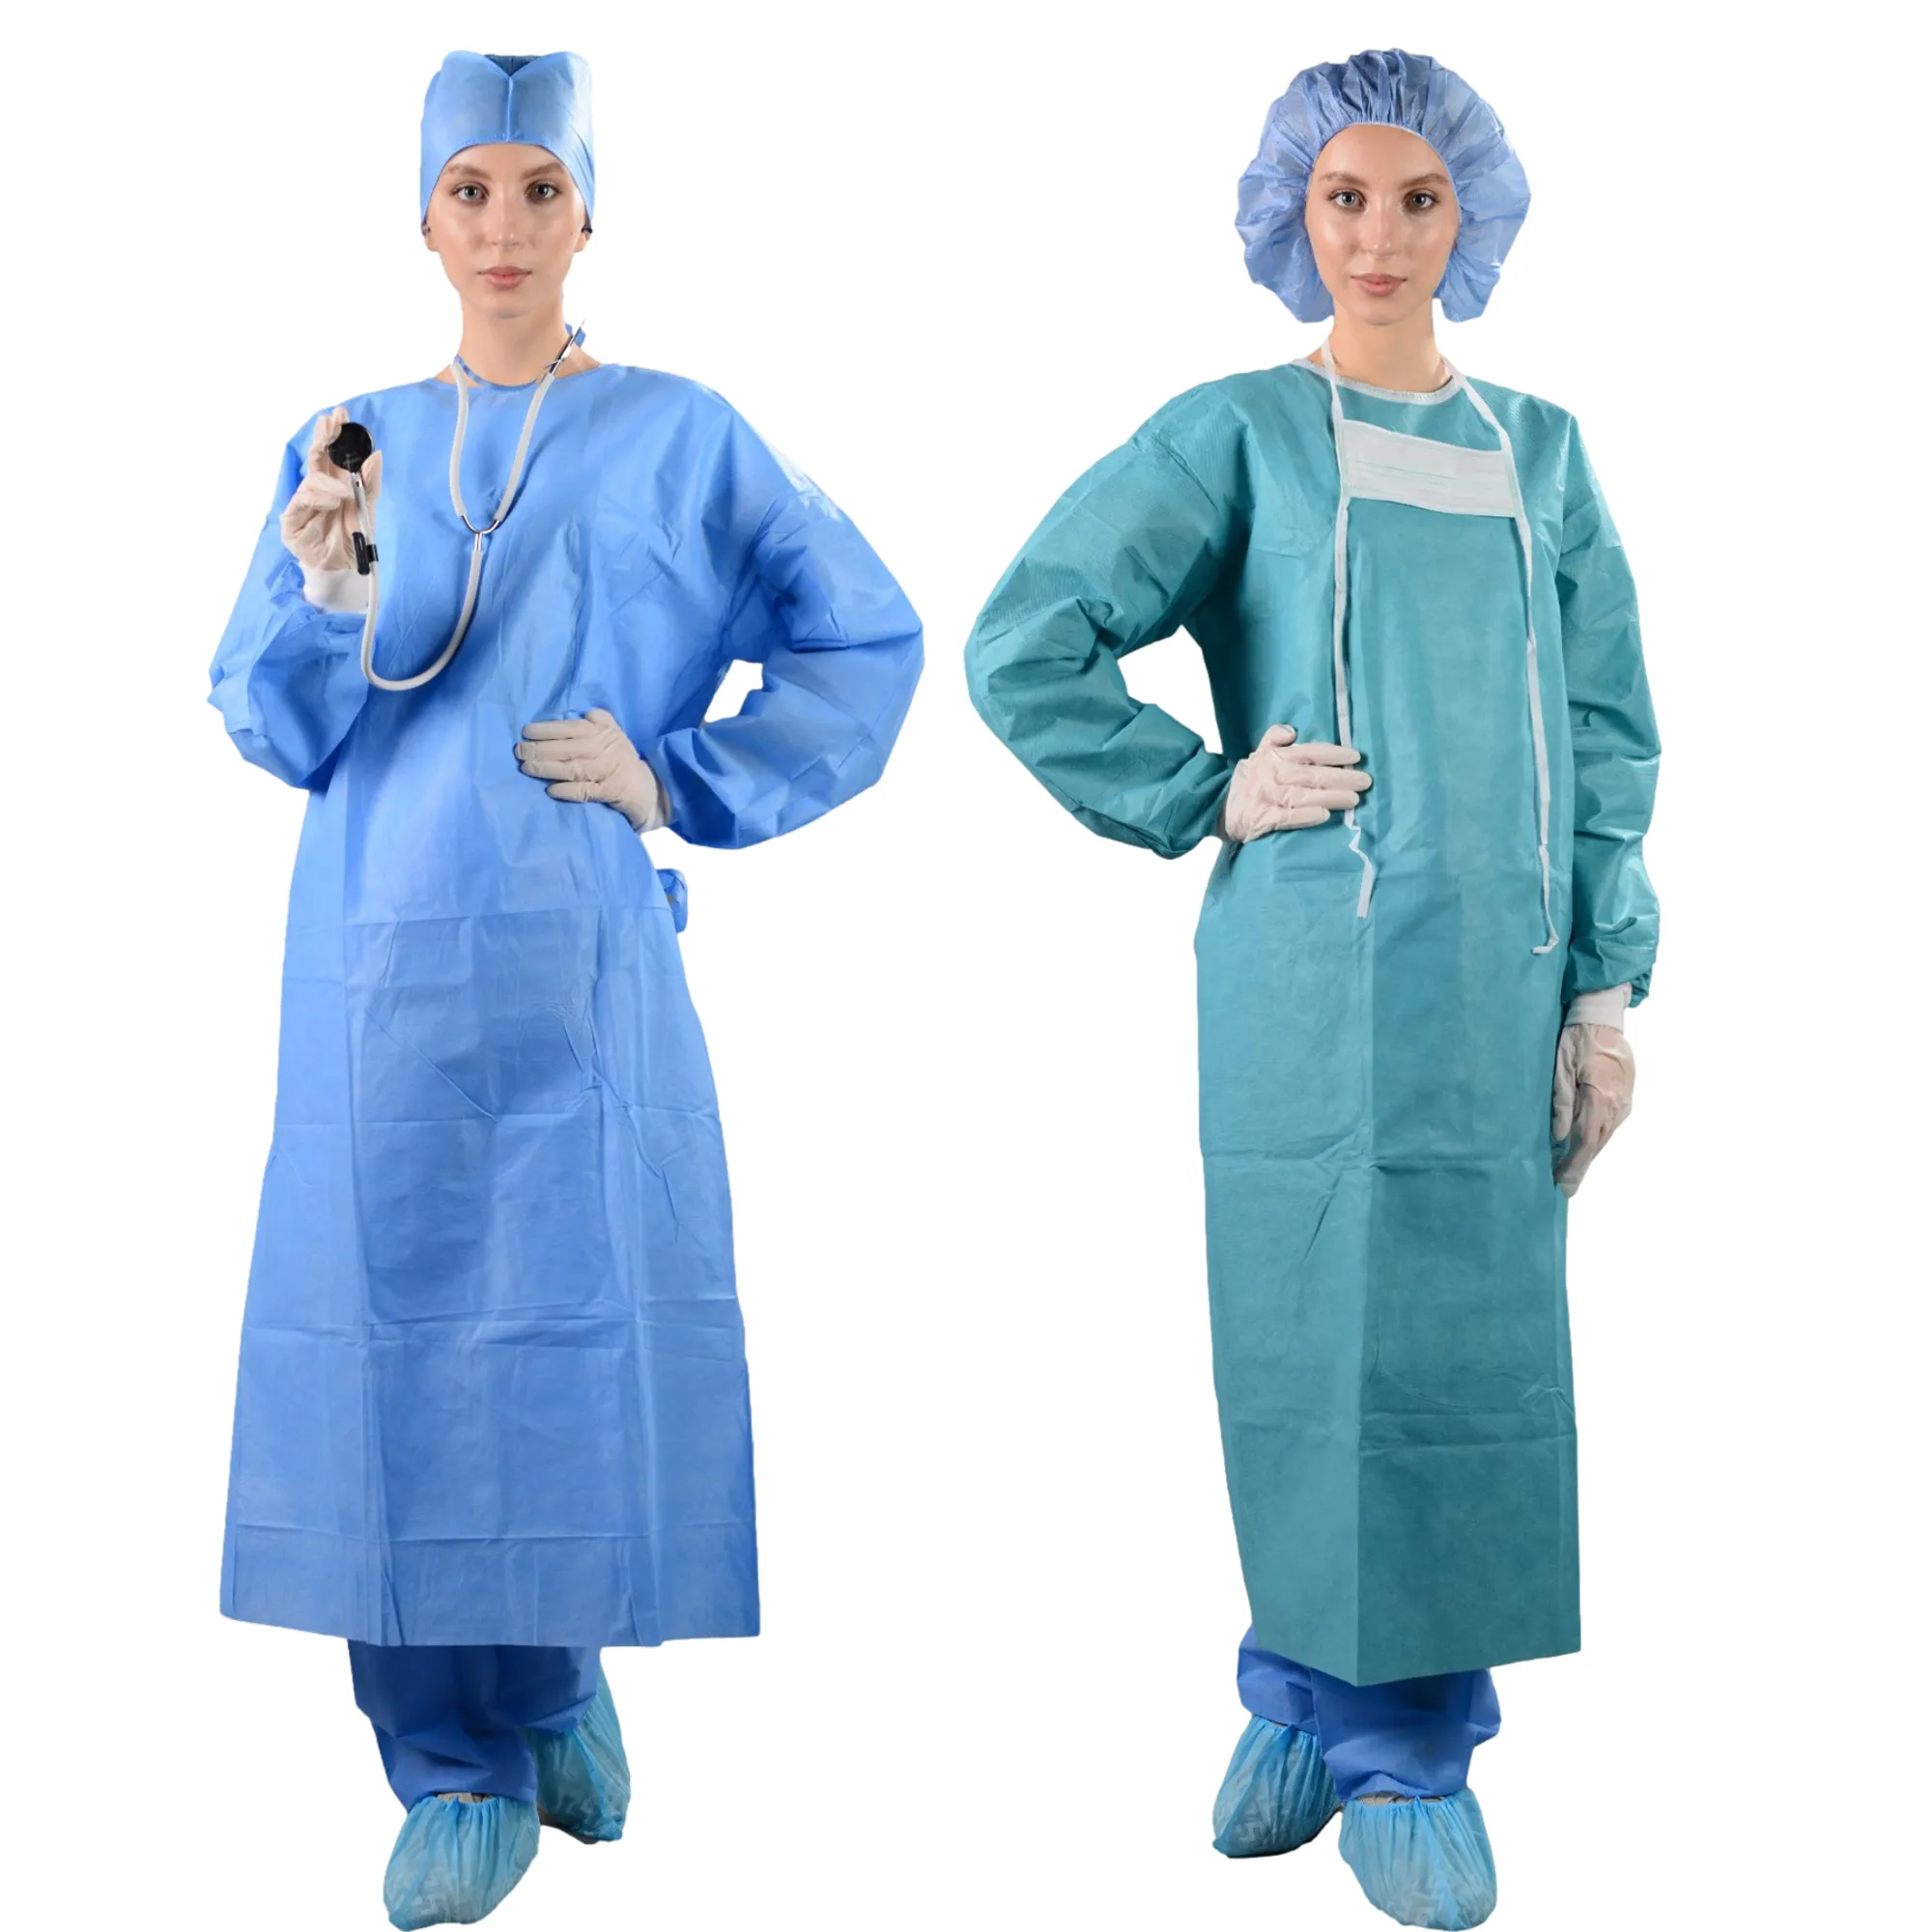 ชุดผ่าตัดแบบใช้แล้วทิ้งสำหรับแพทย์ชุดผ่าตัดเสริมทางการแพทย์